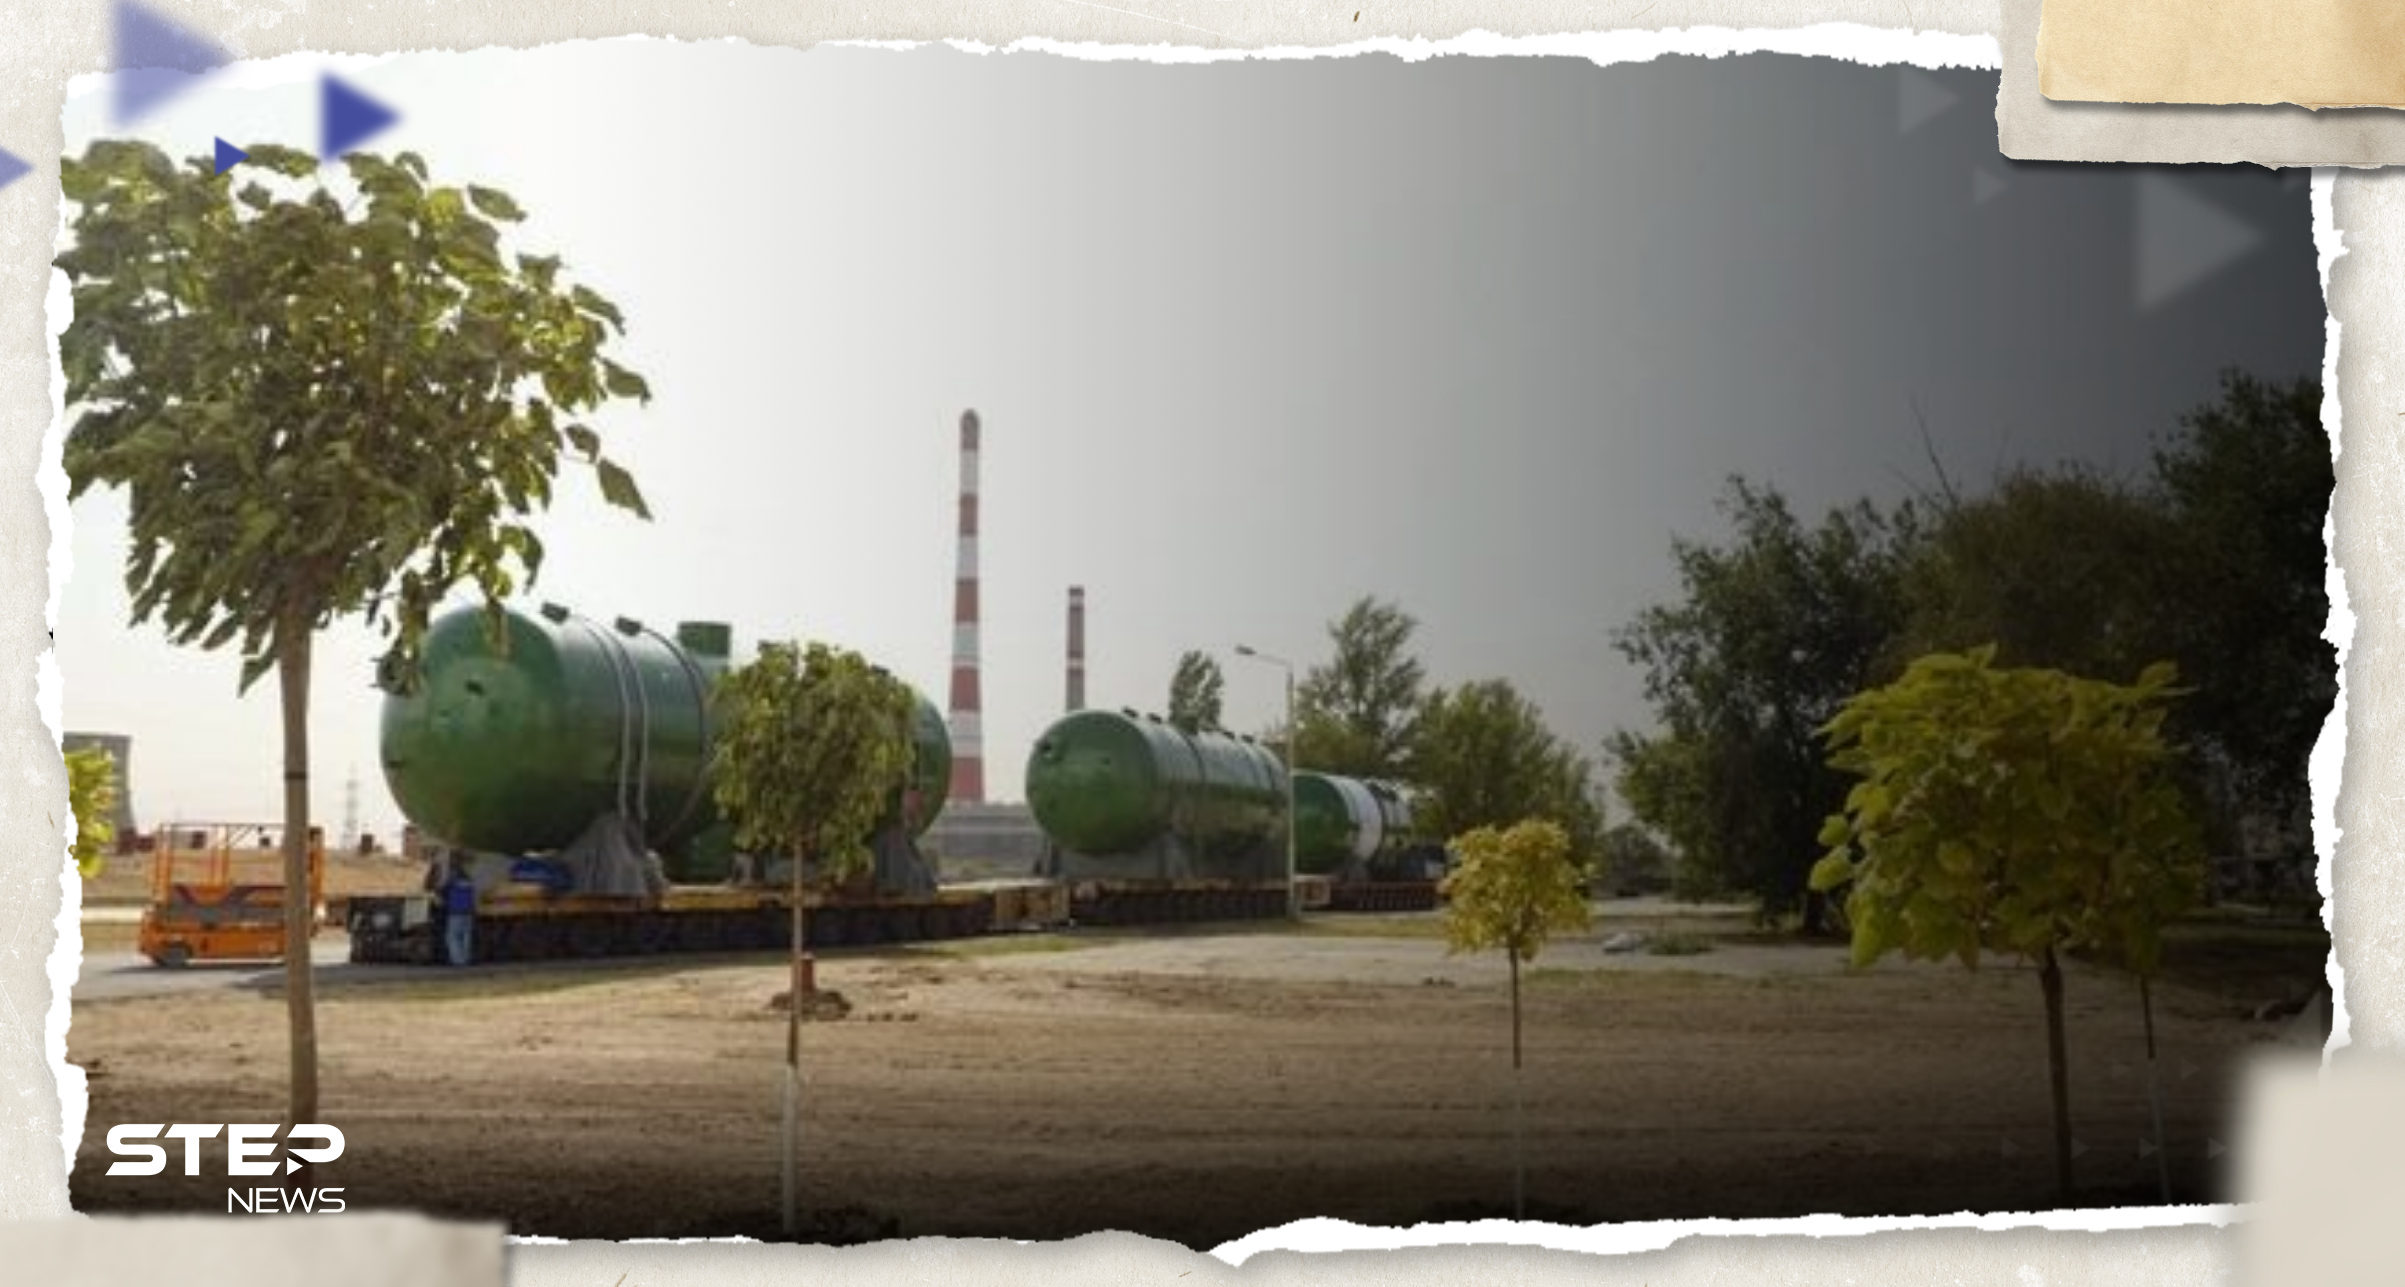 بالفيديو|| مفاعل بوزن 1500 طن عالق على طريق في ليتوانيا بعد رحلة خطرة لنقله